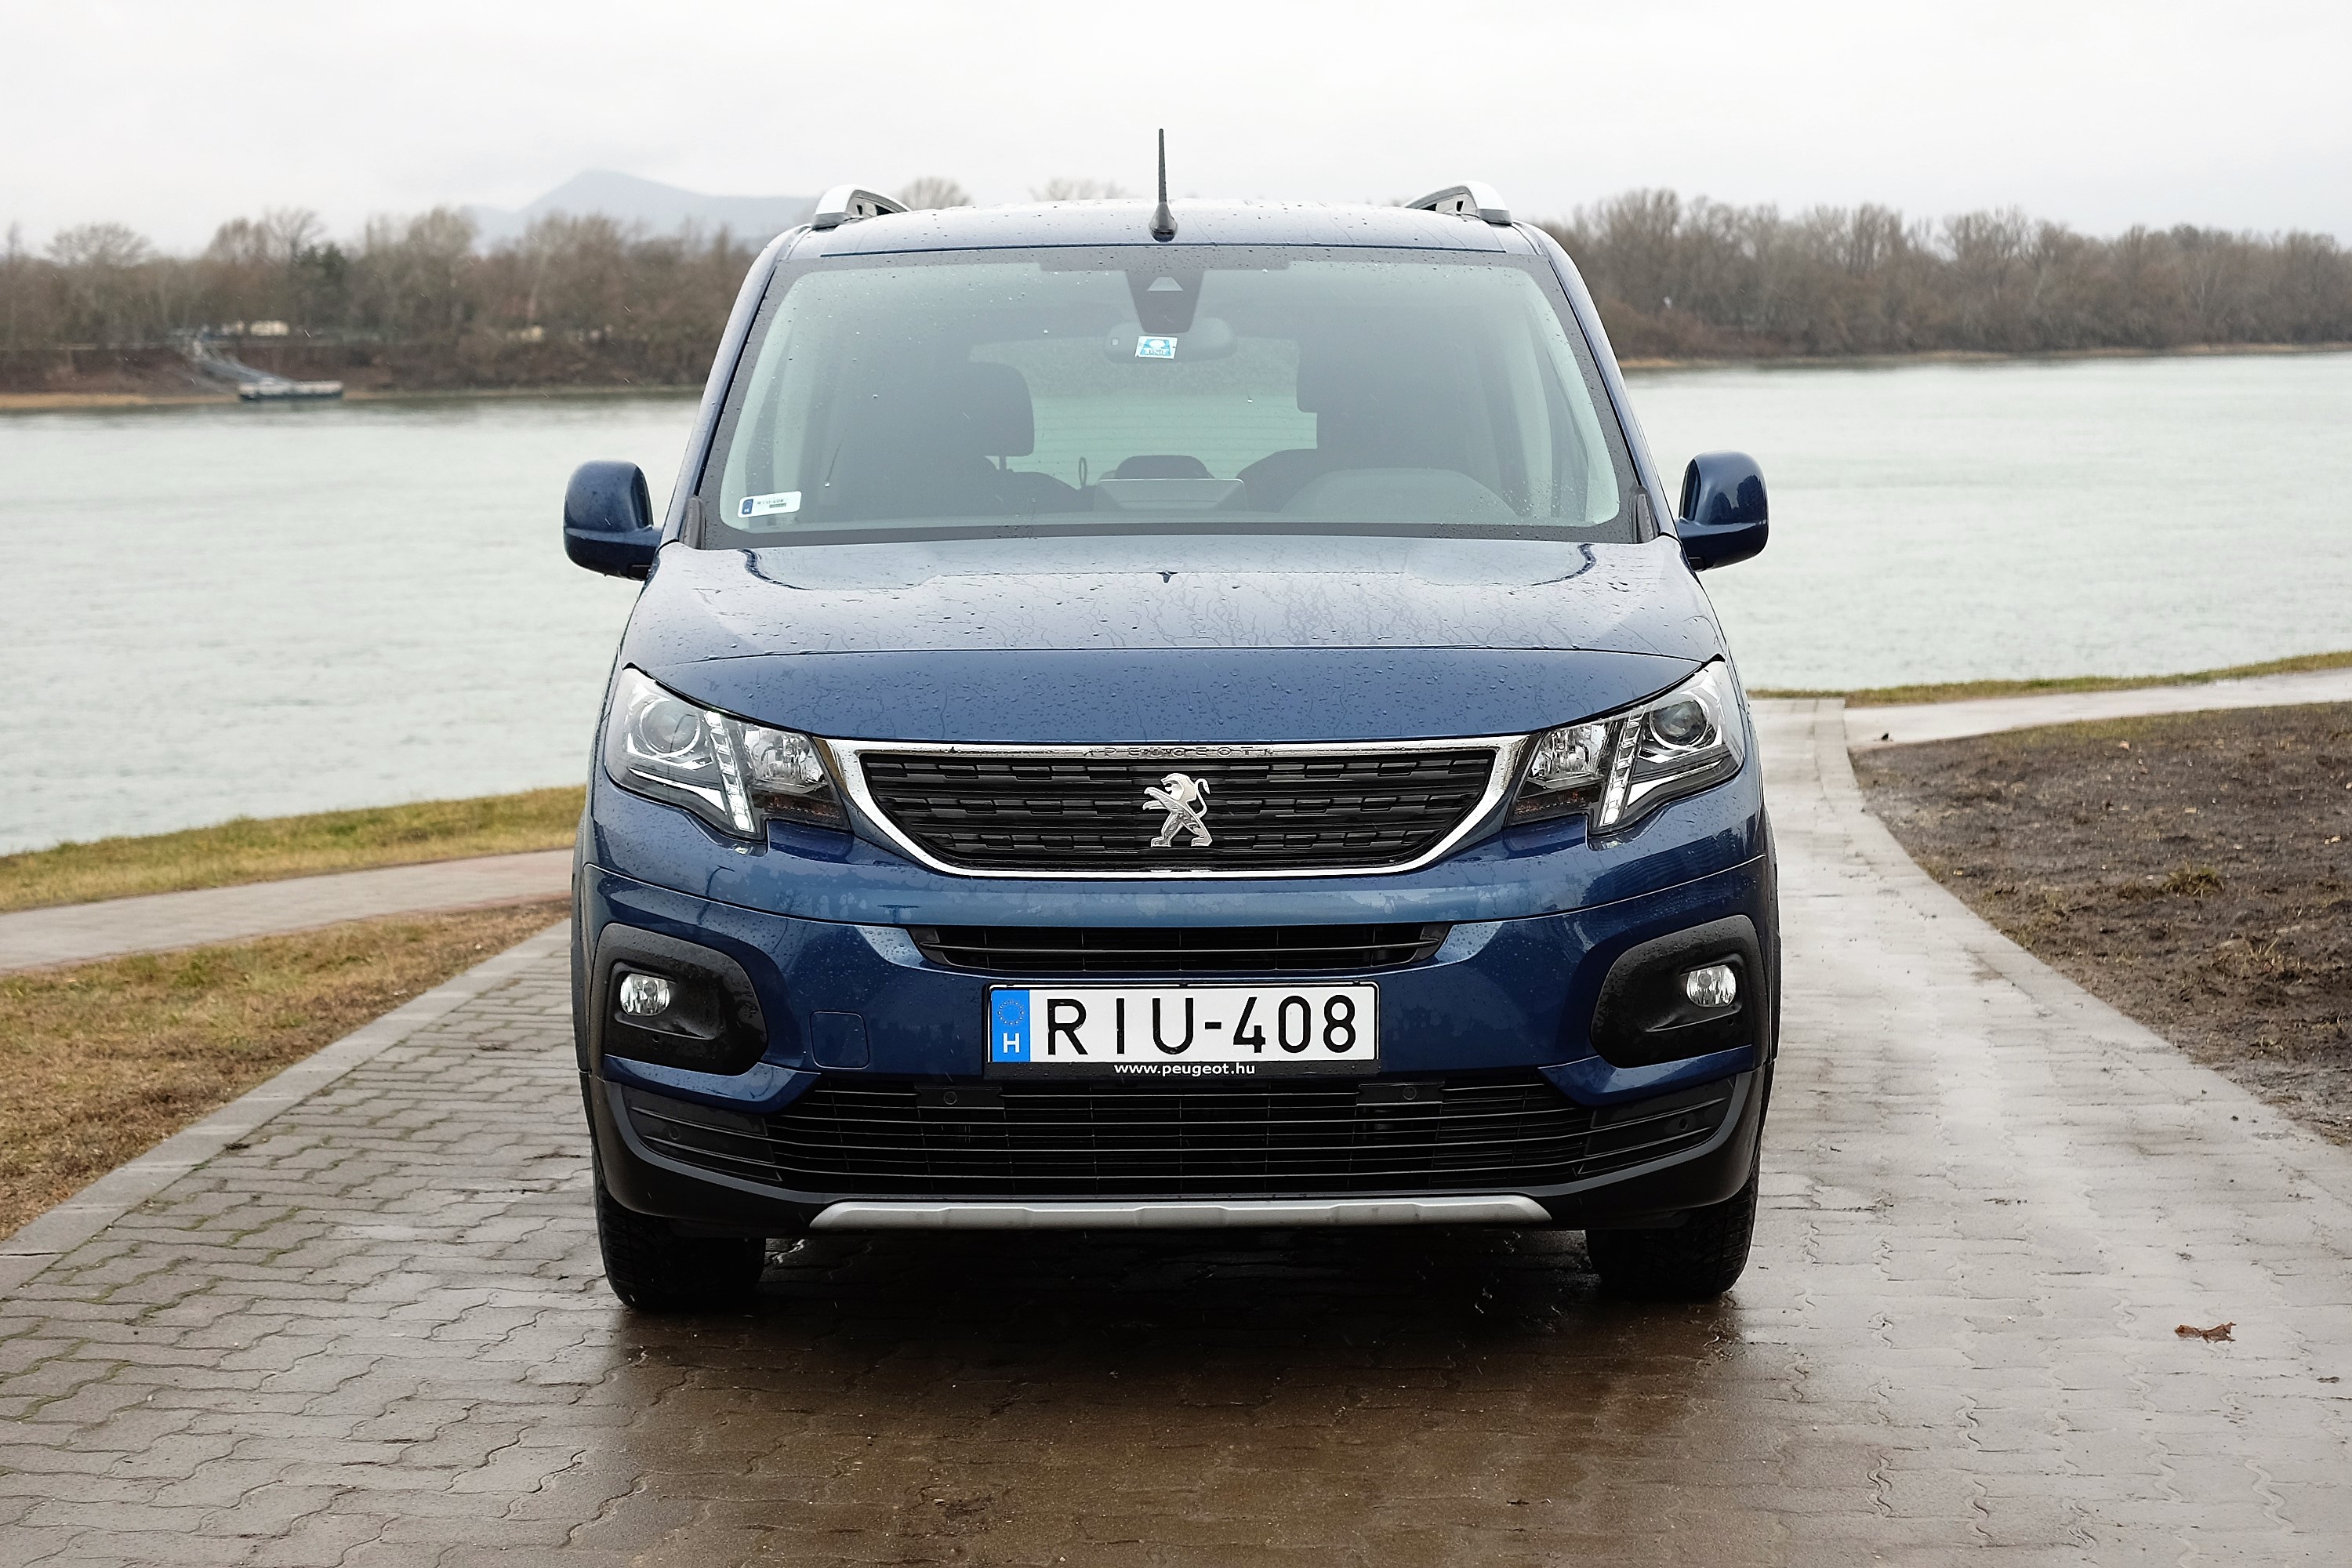 Teleülve is használható egy hétszemélyes autó? – Peugeot Rifter teszt 6